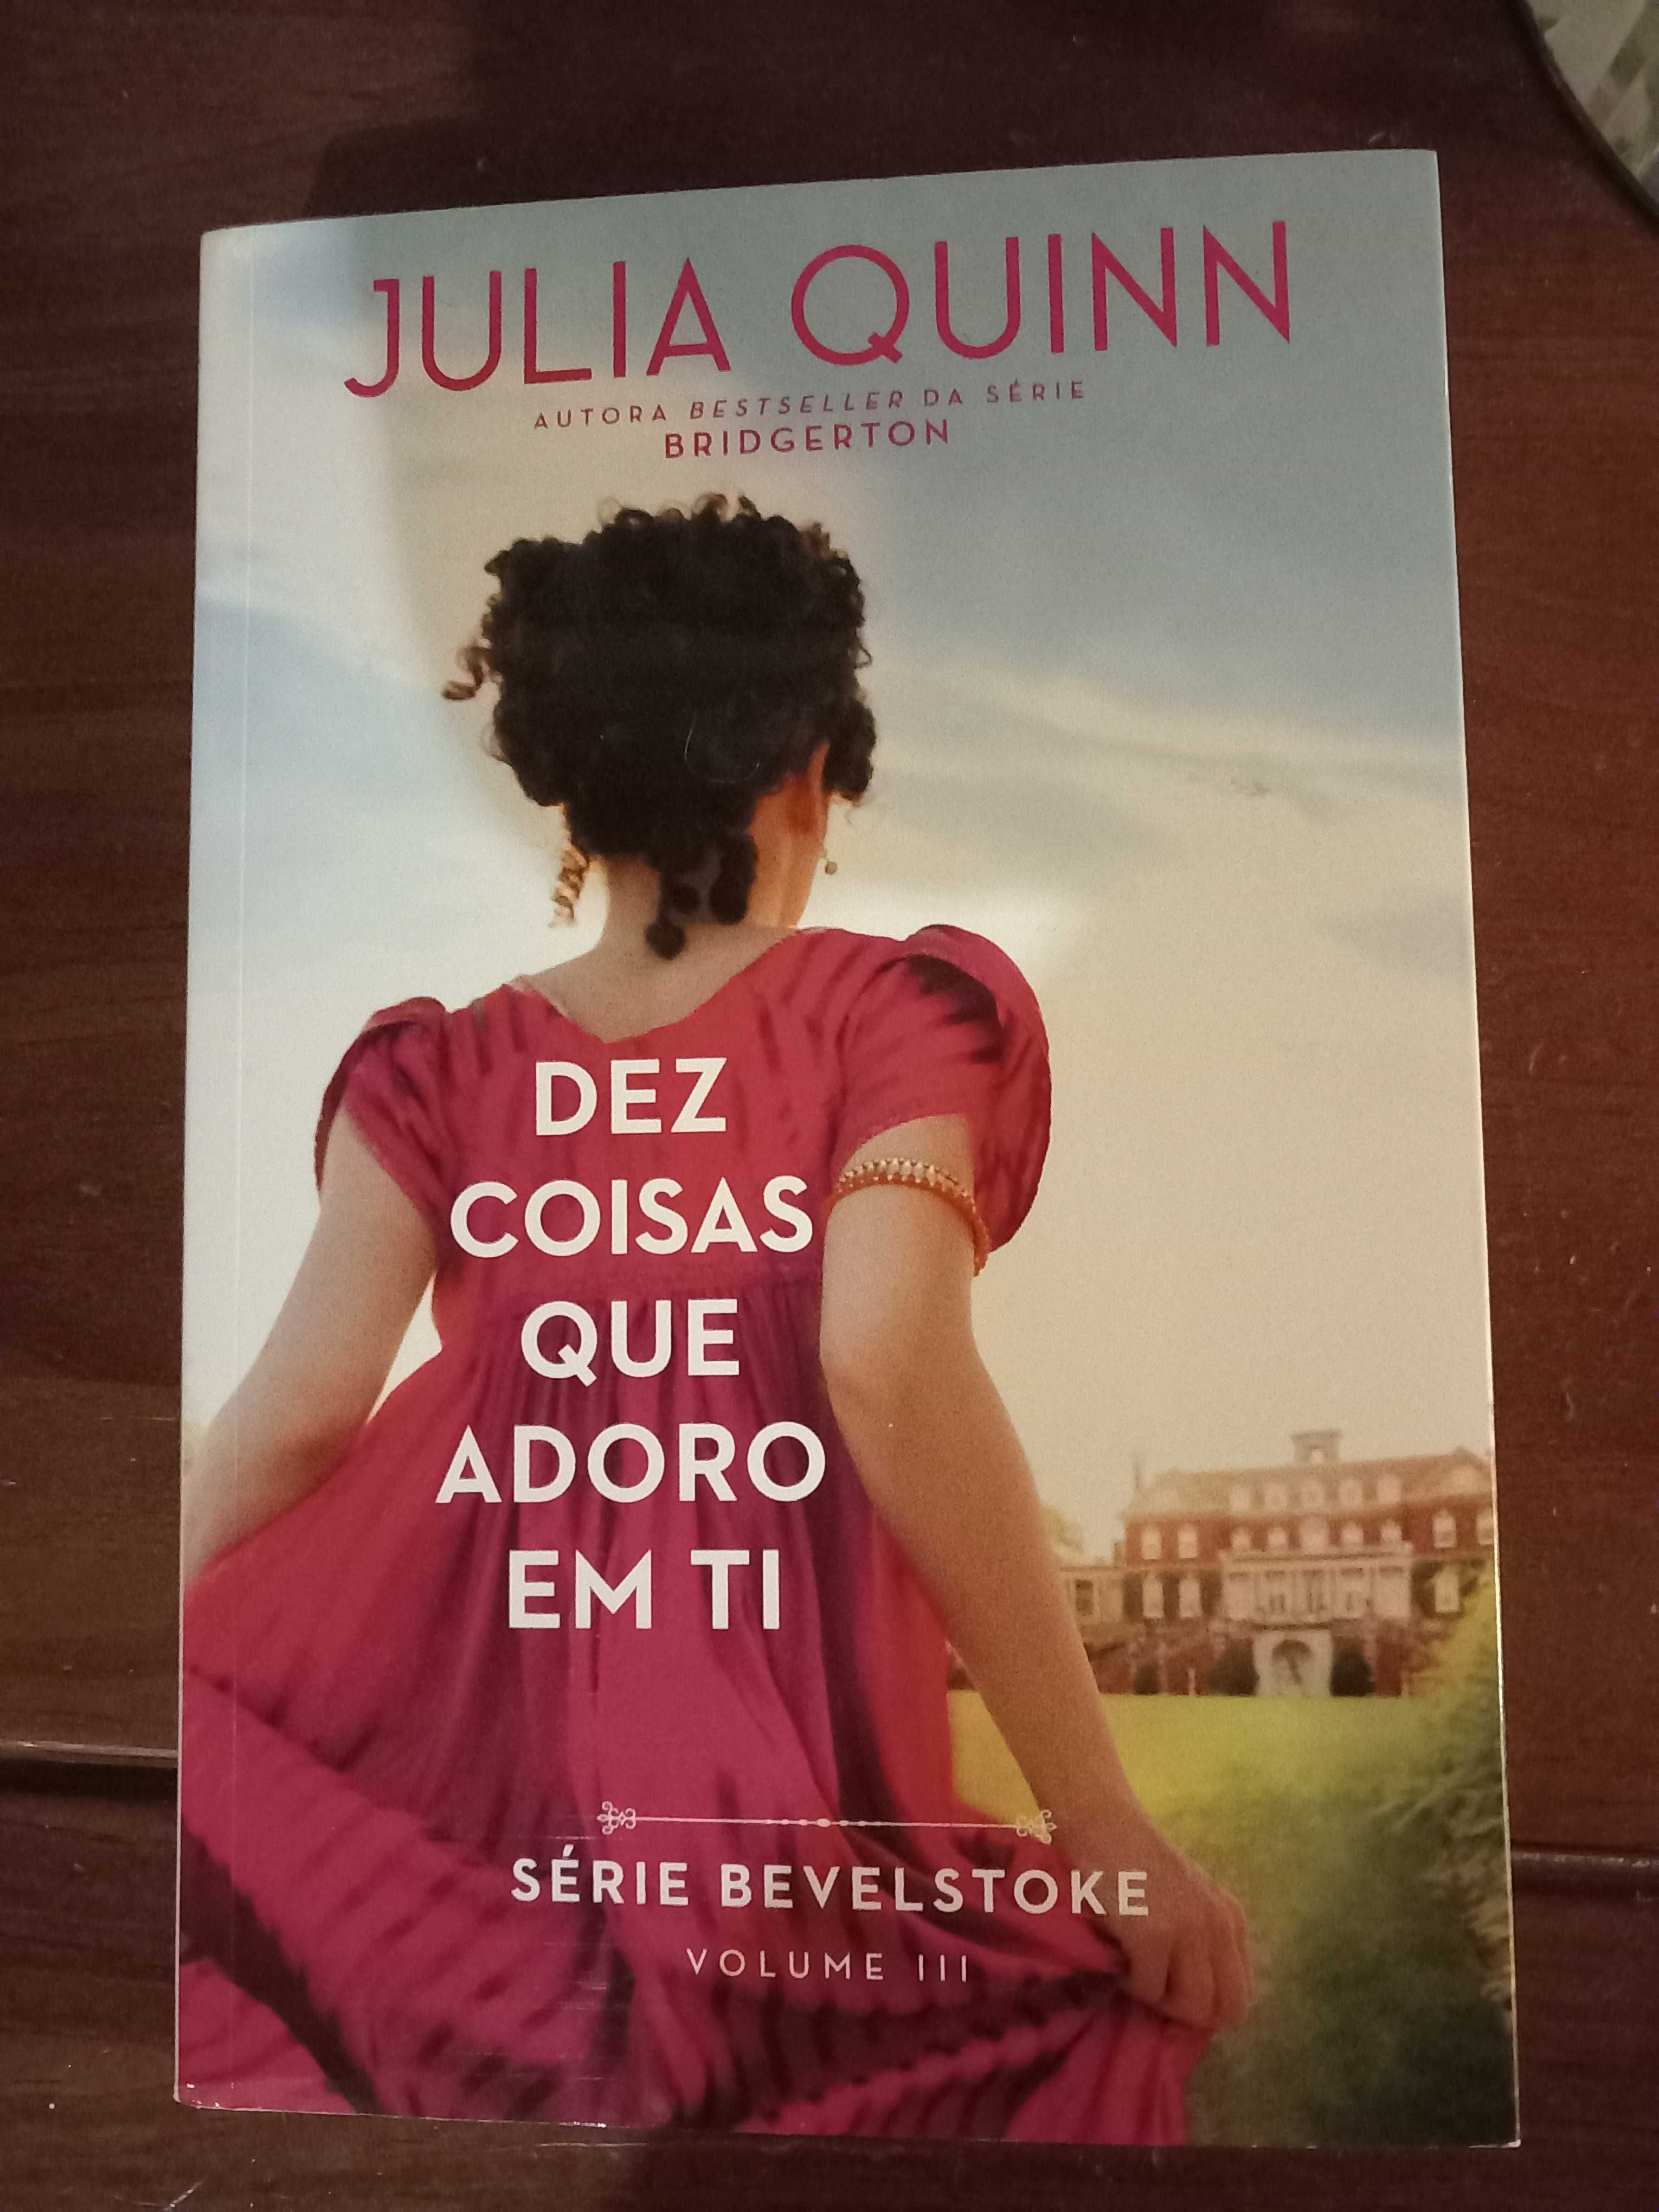 Dez coisas que adoro em ti de julia Quinn com envio incluído